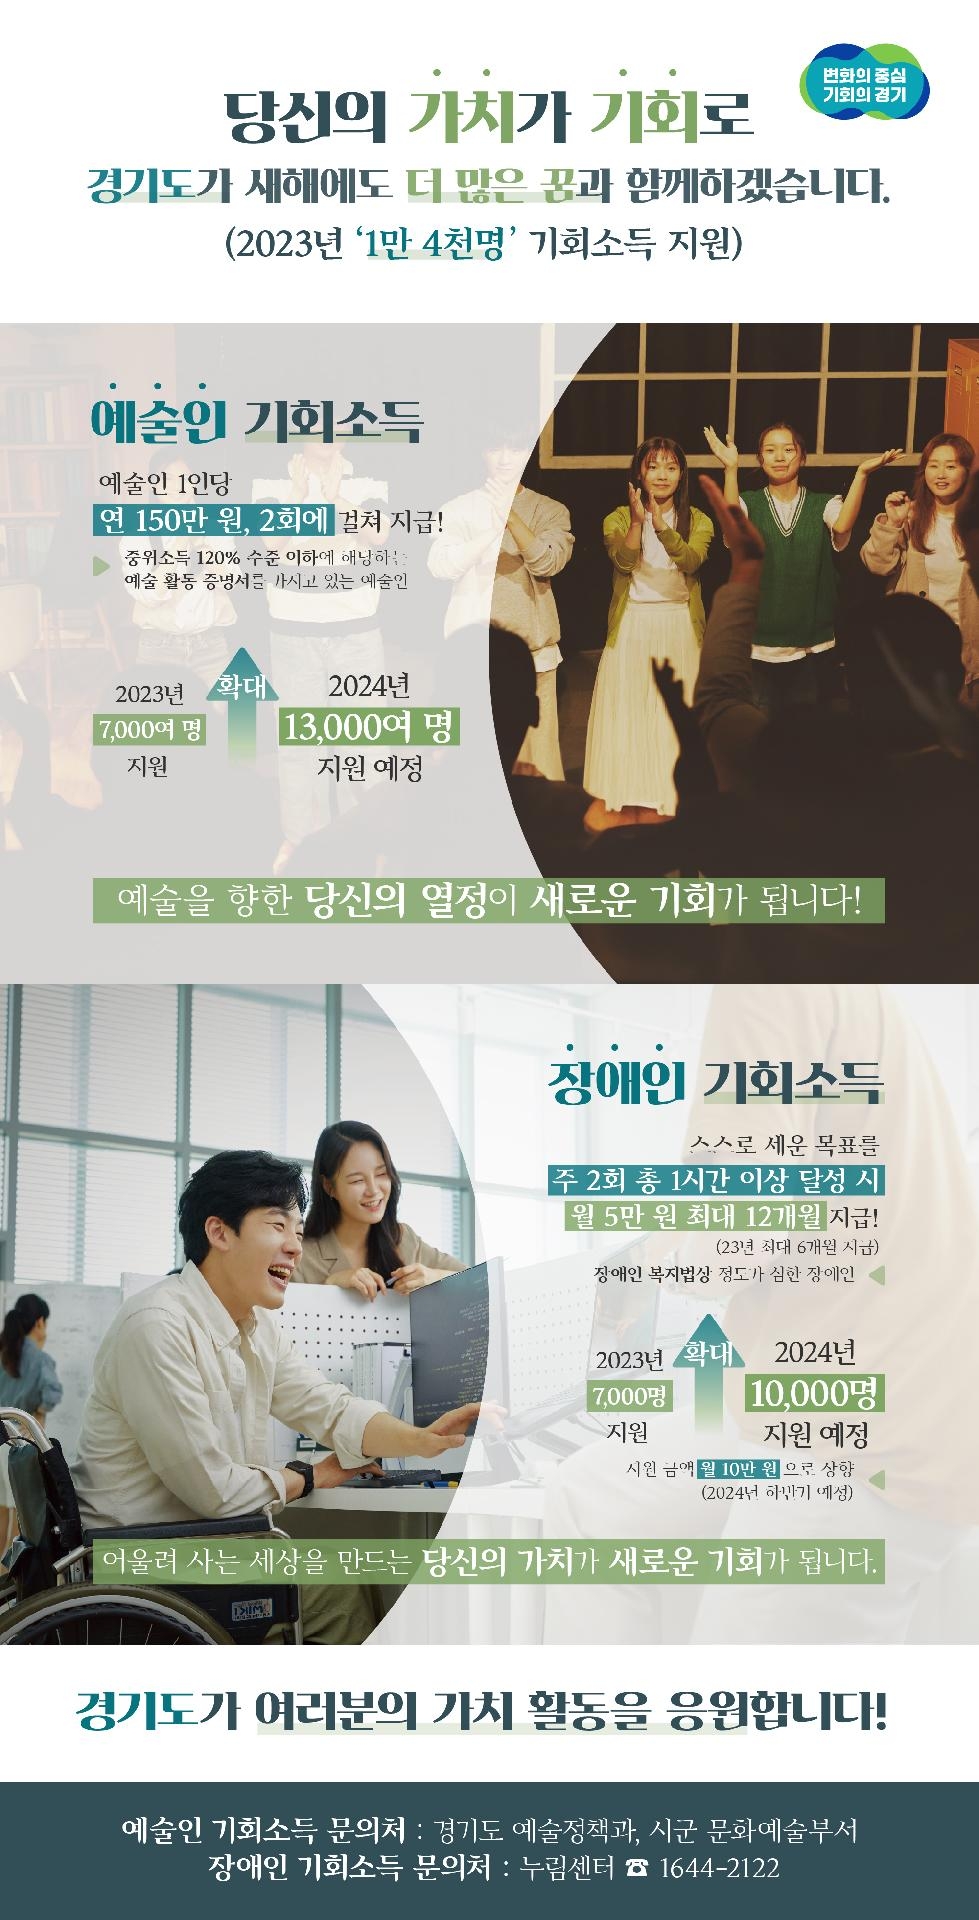 경기도, 올해 예술인ㆍ장애인 기회소득 총 1만4천명 지급. 내년 지원 규